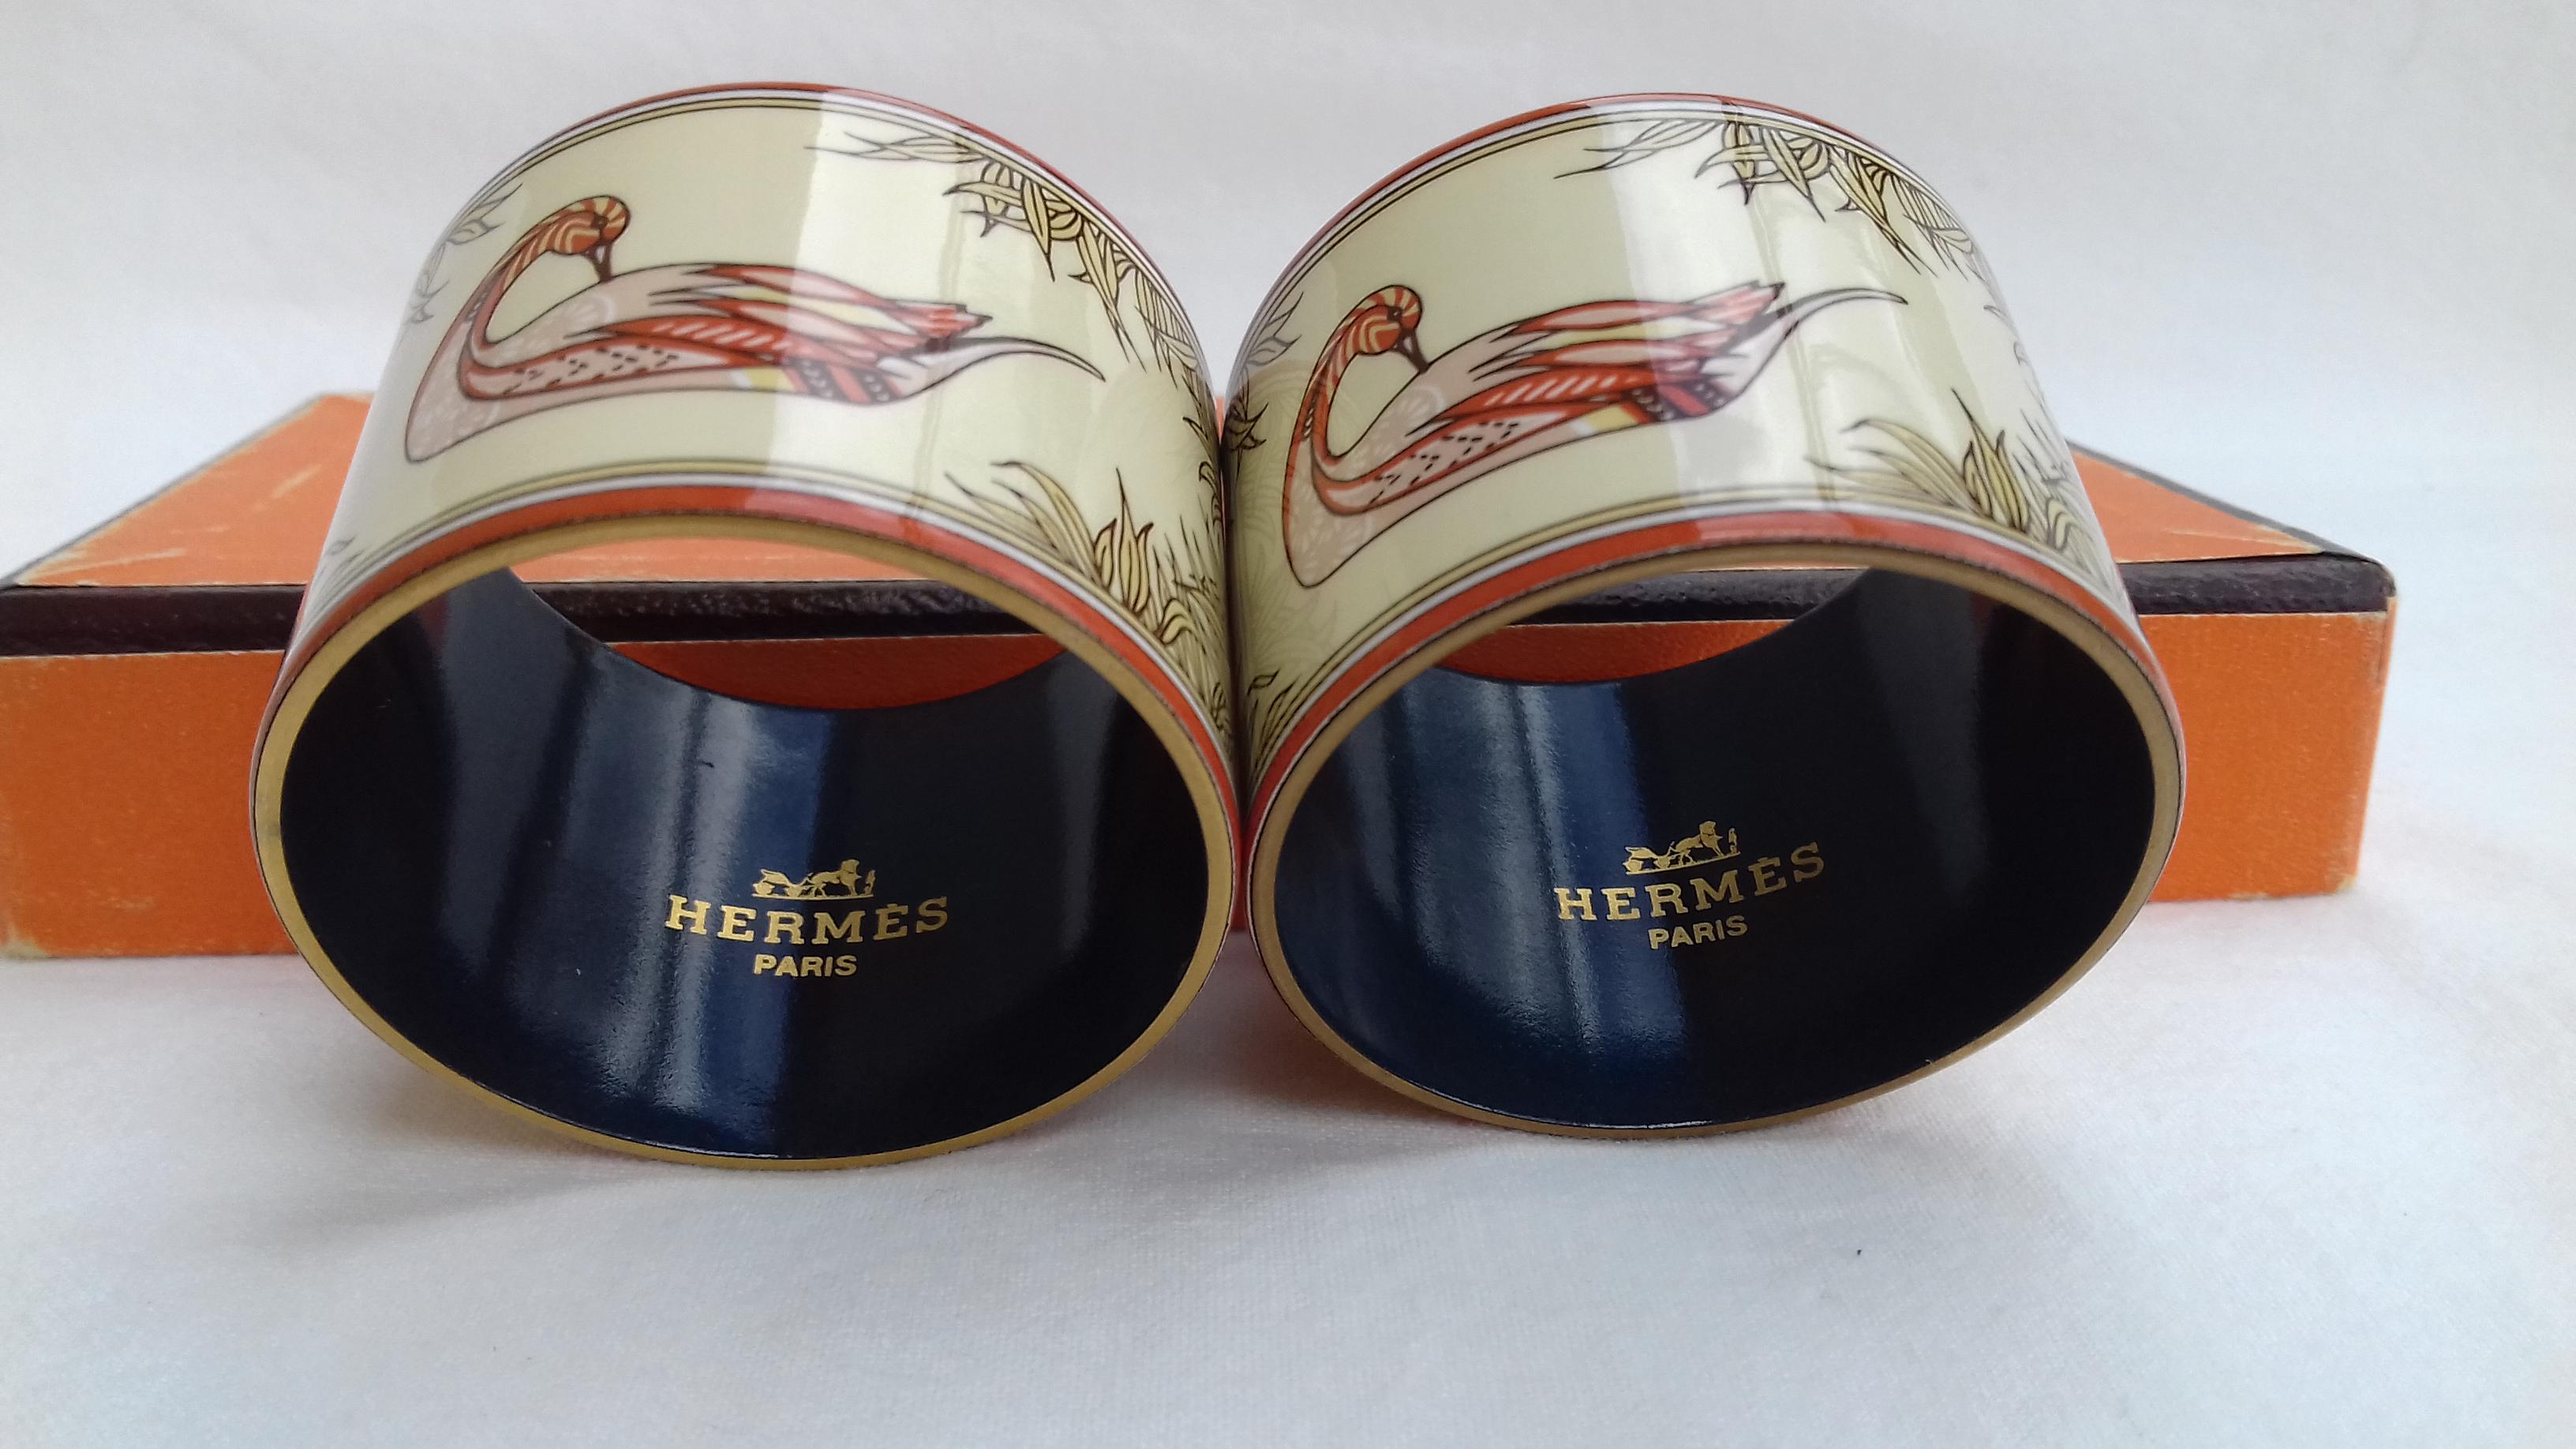 Hermès Vintage Duck Pattern Enamel Printed Napkin Rings Holders SUPER RARE 6